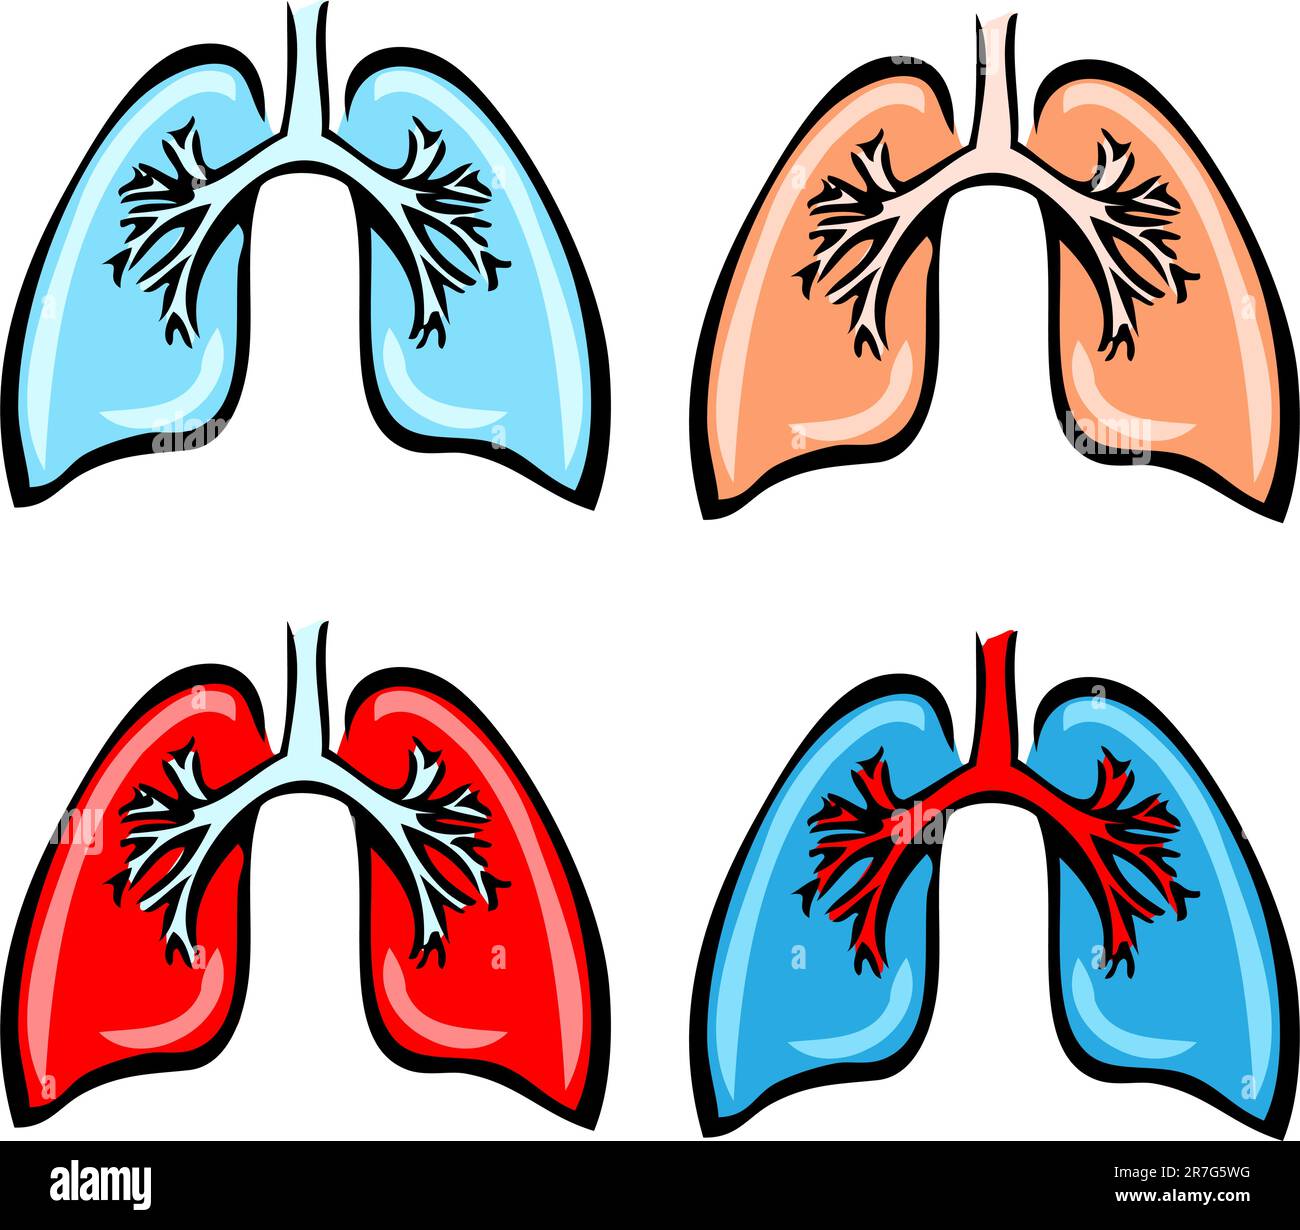 Anatomia polmonare, bronchi, illustrazione medica umana, 4 emblema, schema, I benefici di Lung Illustrazione Vettoriale